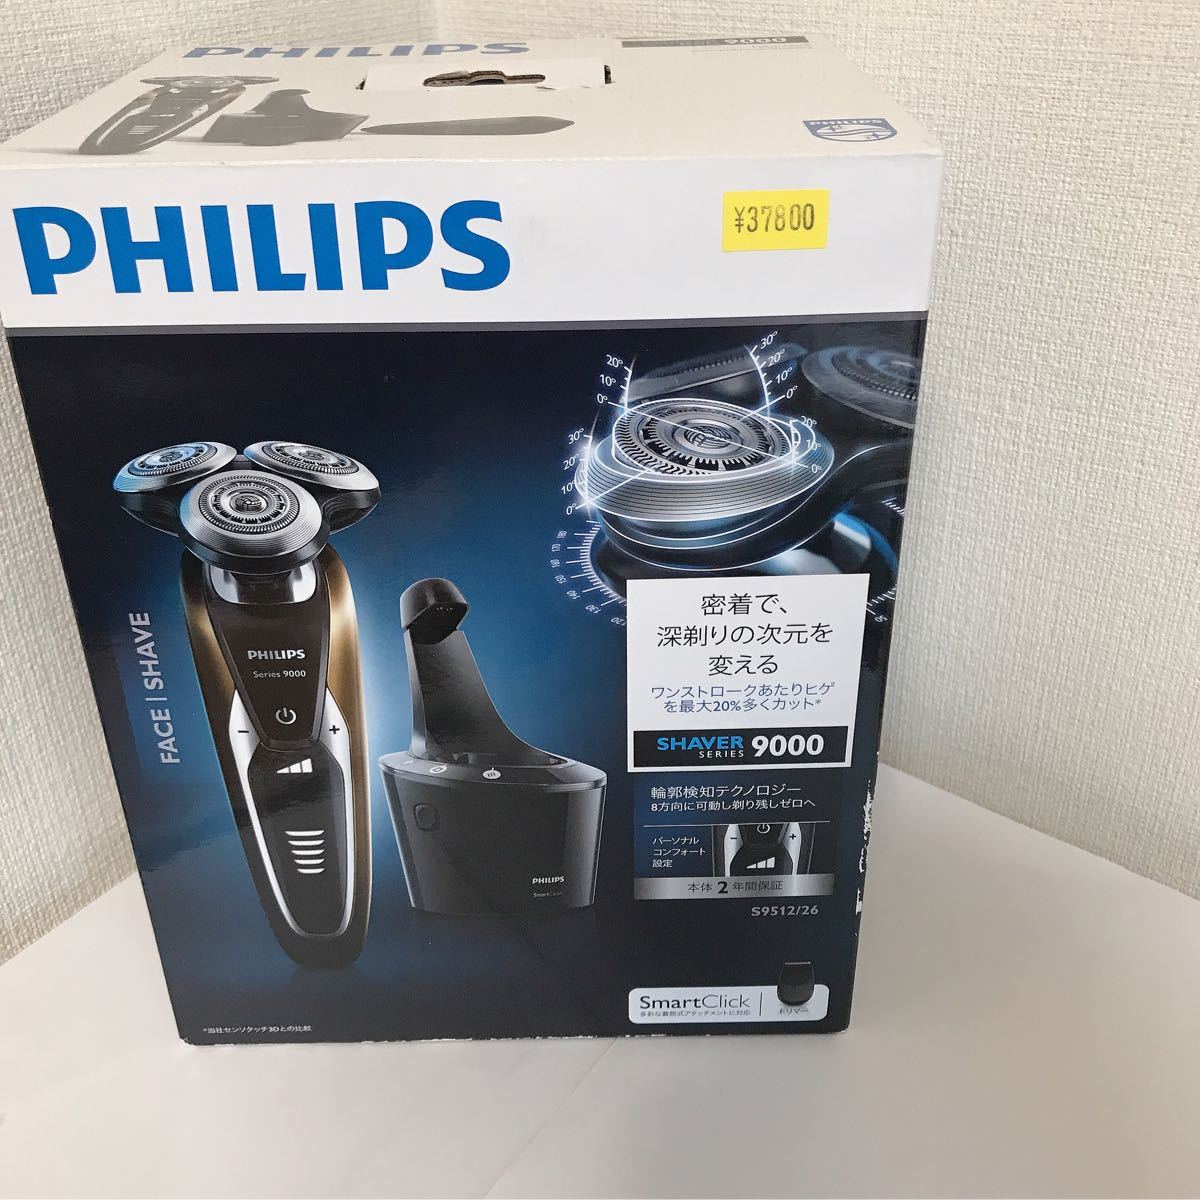 フィリップス メンズシェーバーPHILIPS 9000シリーズ S9512/26-